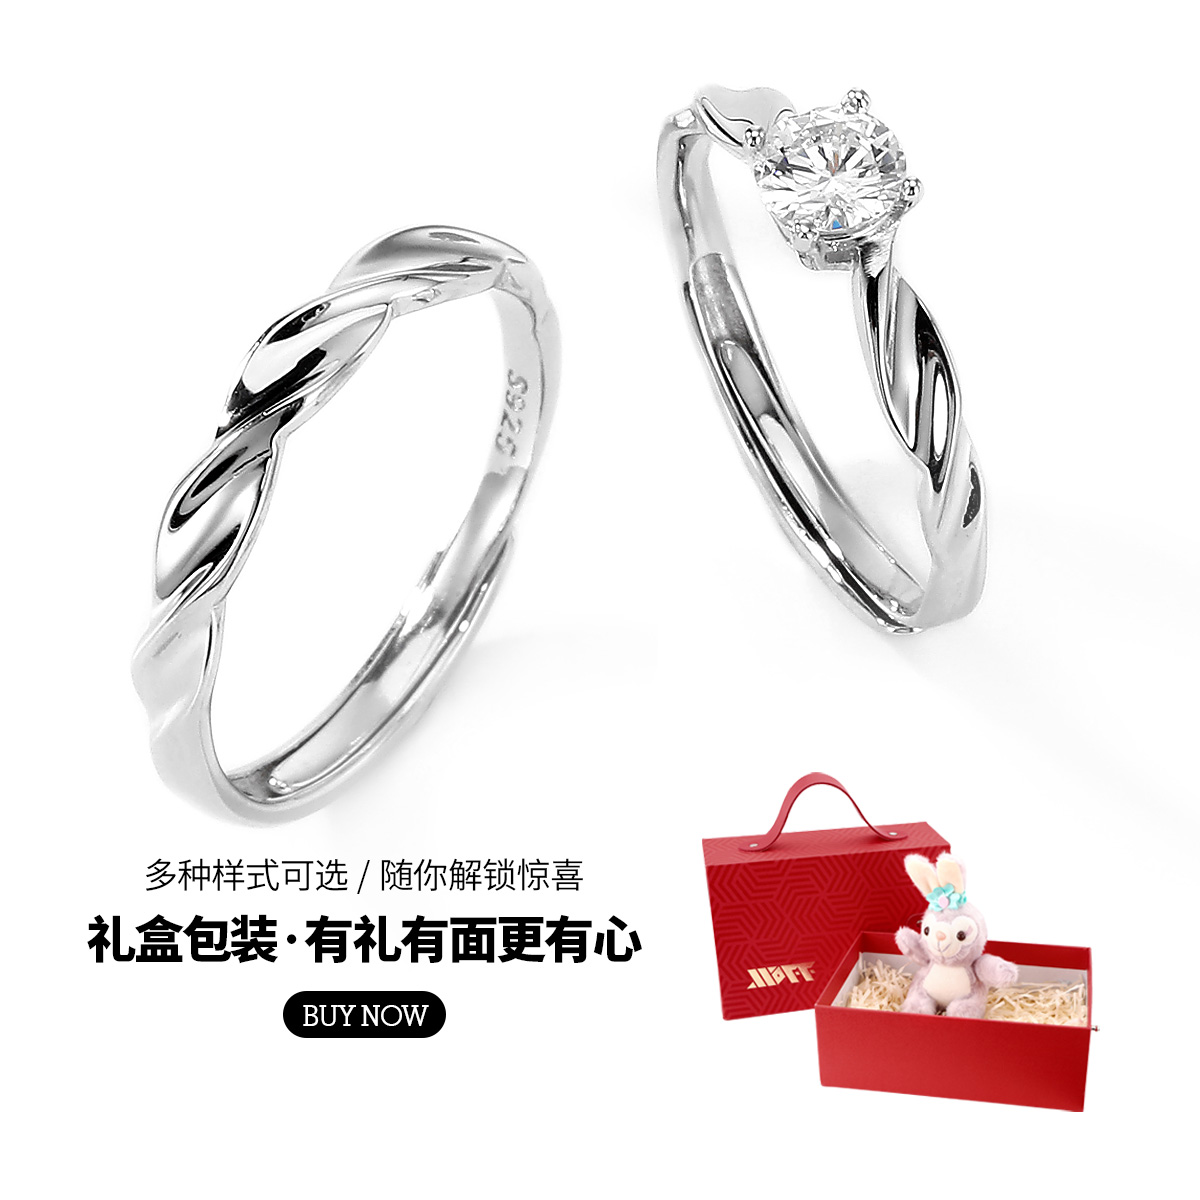 XXOFF恋爱结点925银戒指女小众设计莫比乌斯环情侣对戒情人节礼物 - 图3